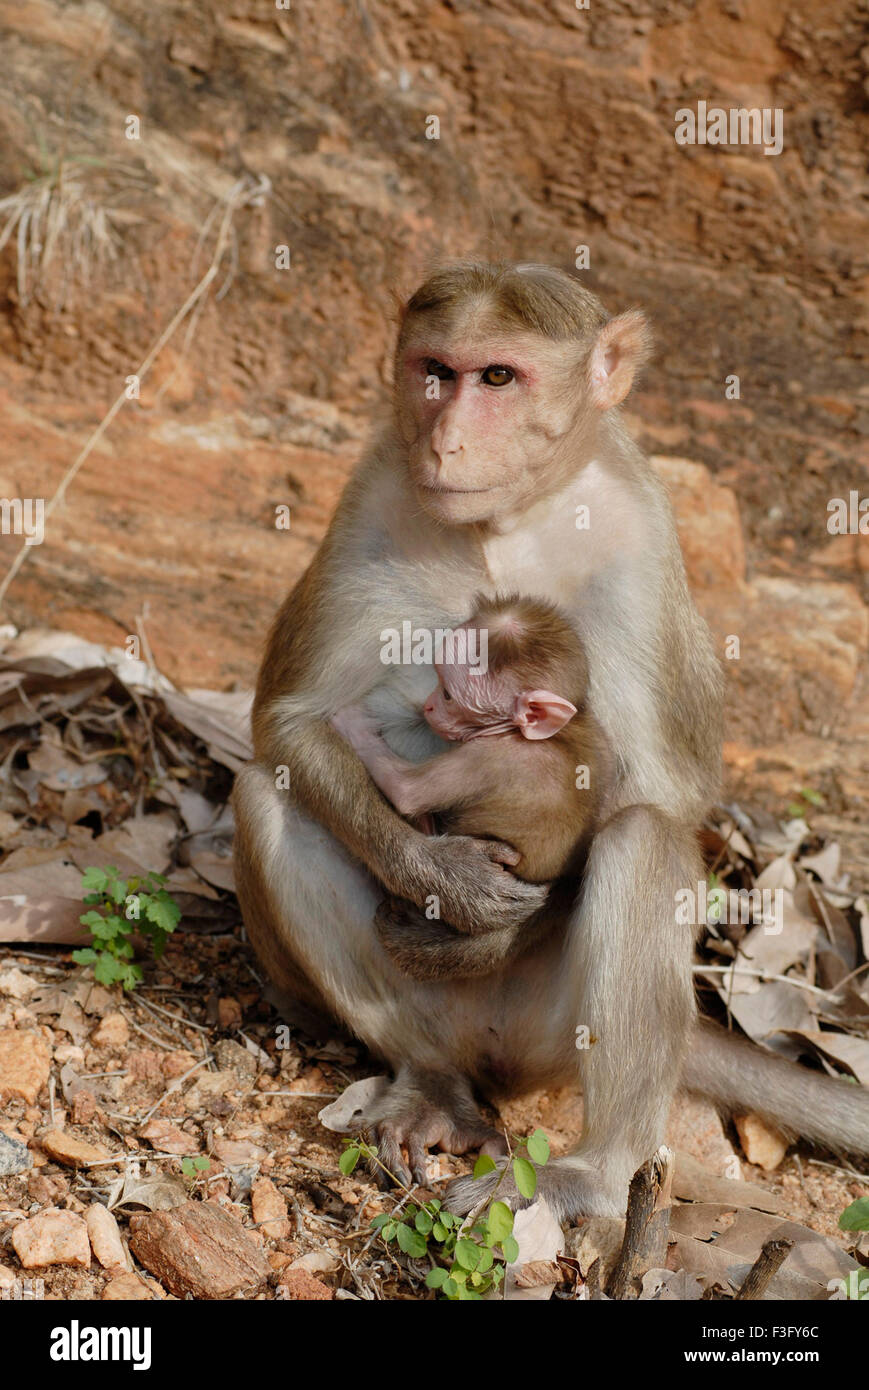 Motorhaube-Affe mit Baby am Straßenrand der bewaldeten Hügel; Palamuthircholai; Tamil Nadu; Indien Stockfoto